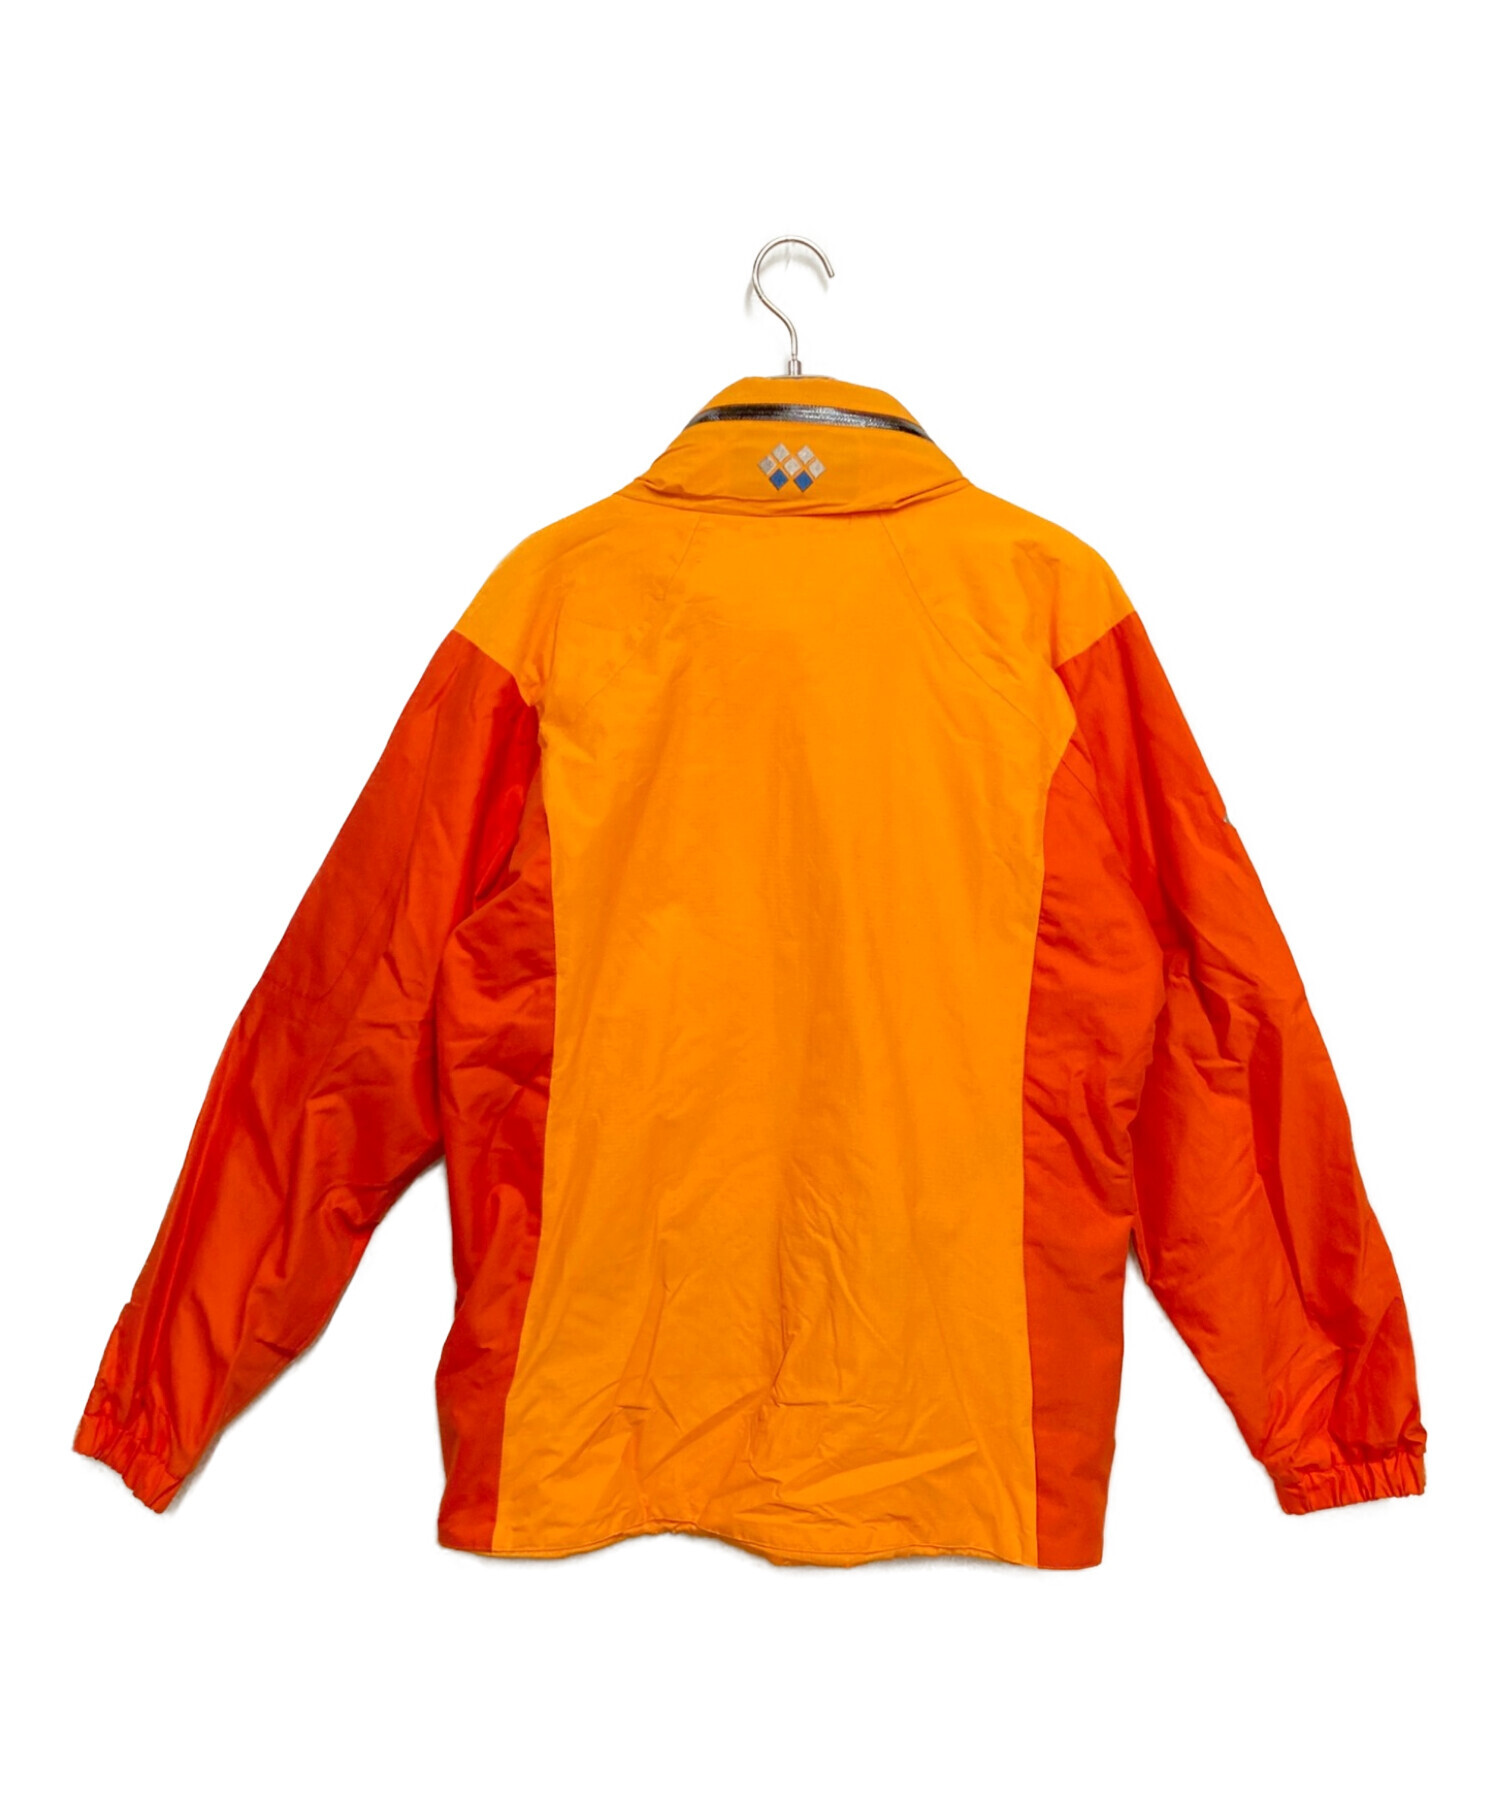 mont-bell (モンベル) ファンスタイルジャケット オレンジ サイズ:S